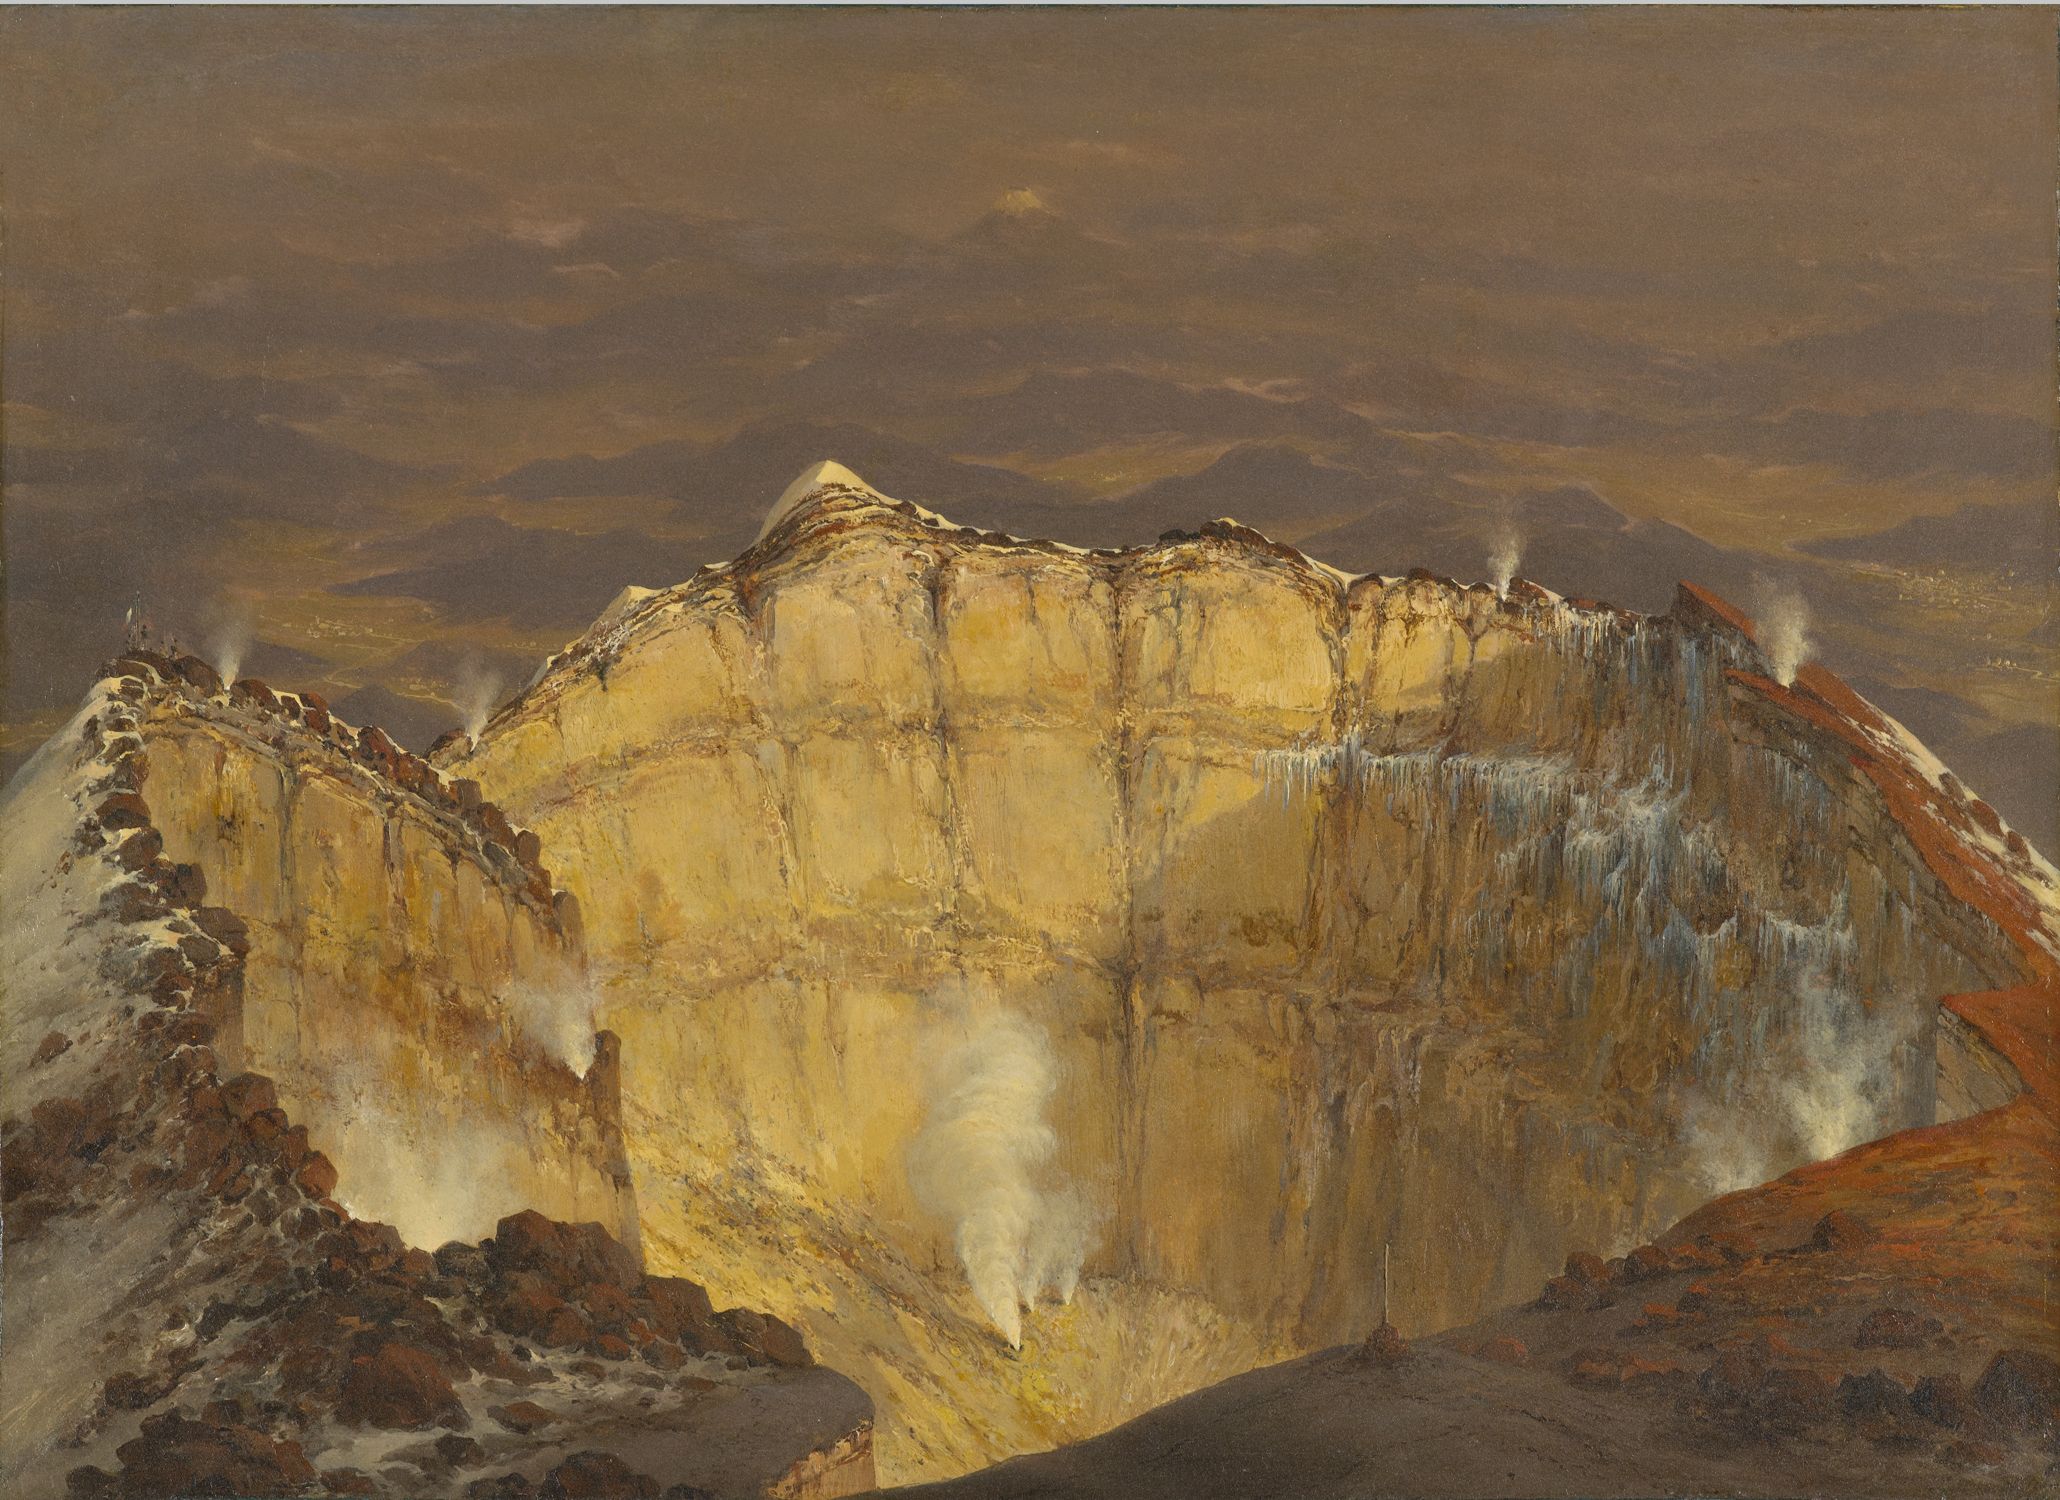 ポポカテペトル山の火口 by Jean-Baptiste Louis Gros - 1833年 - 30.5 x 43.2 cm 